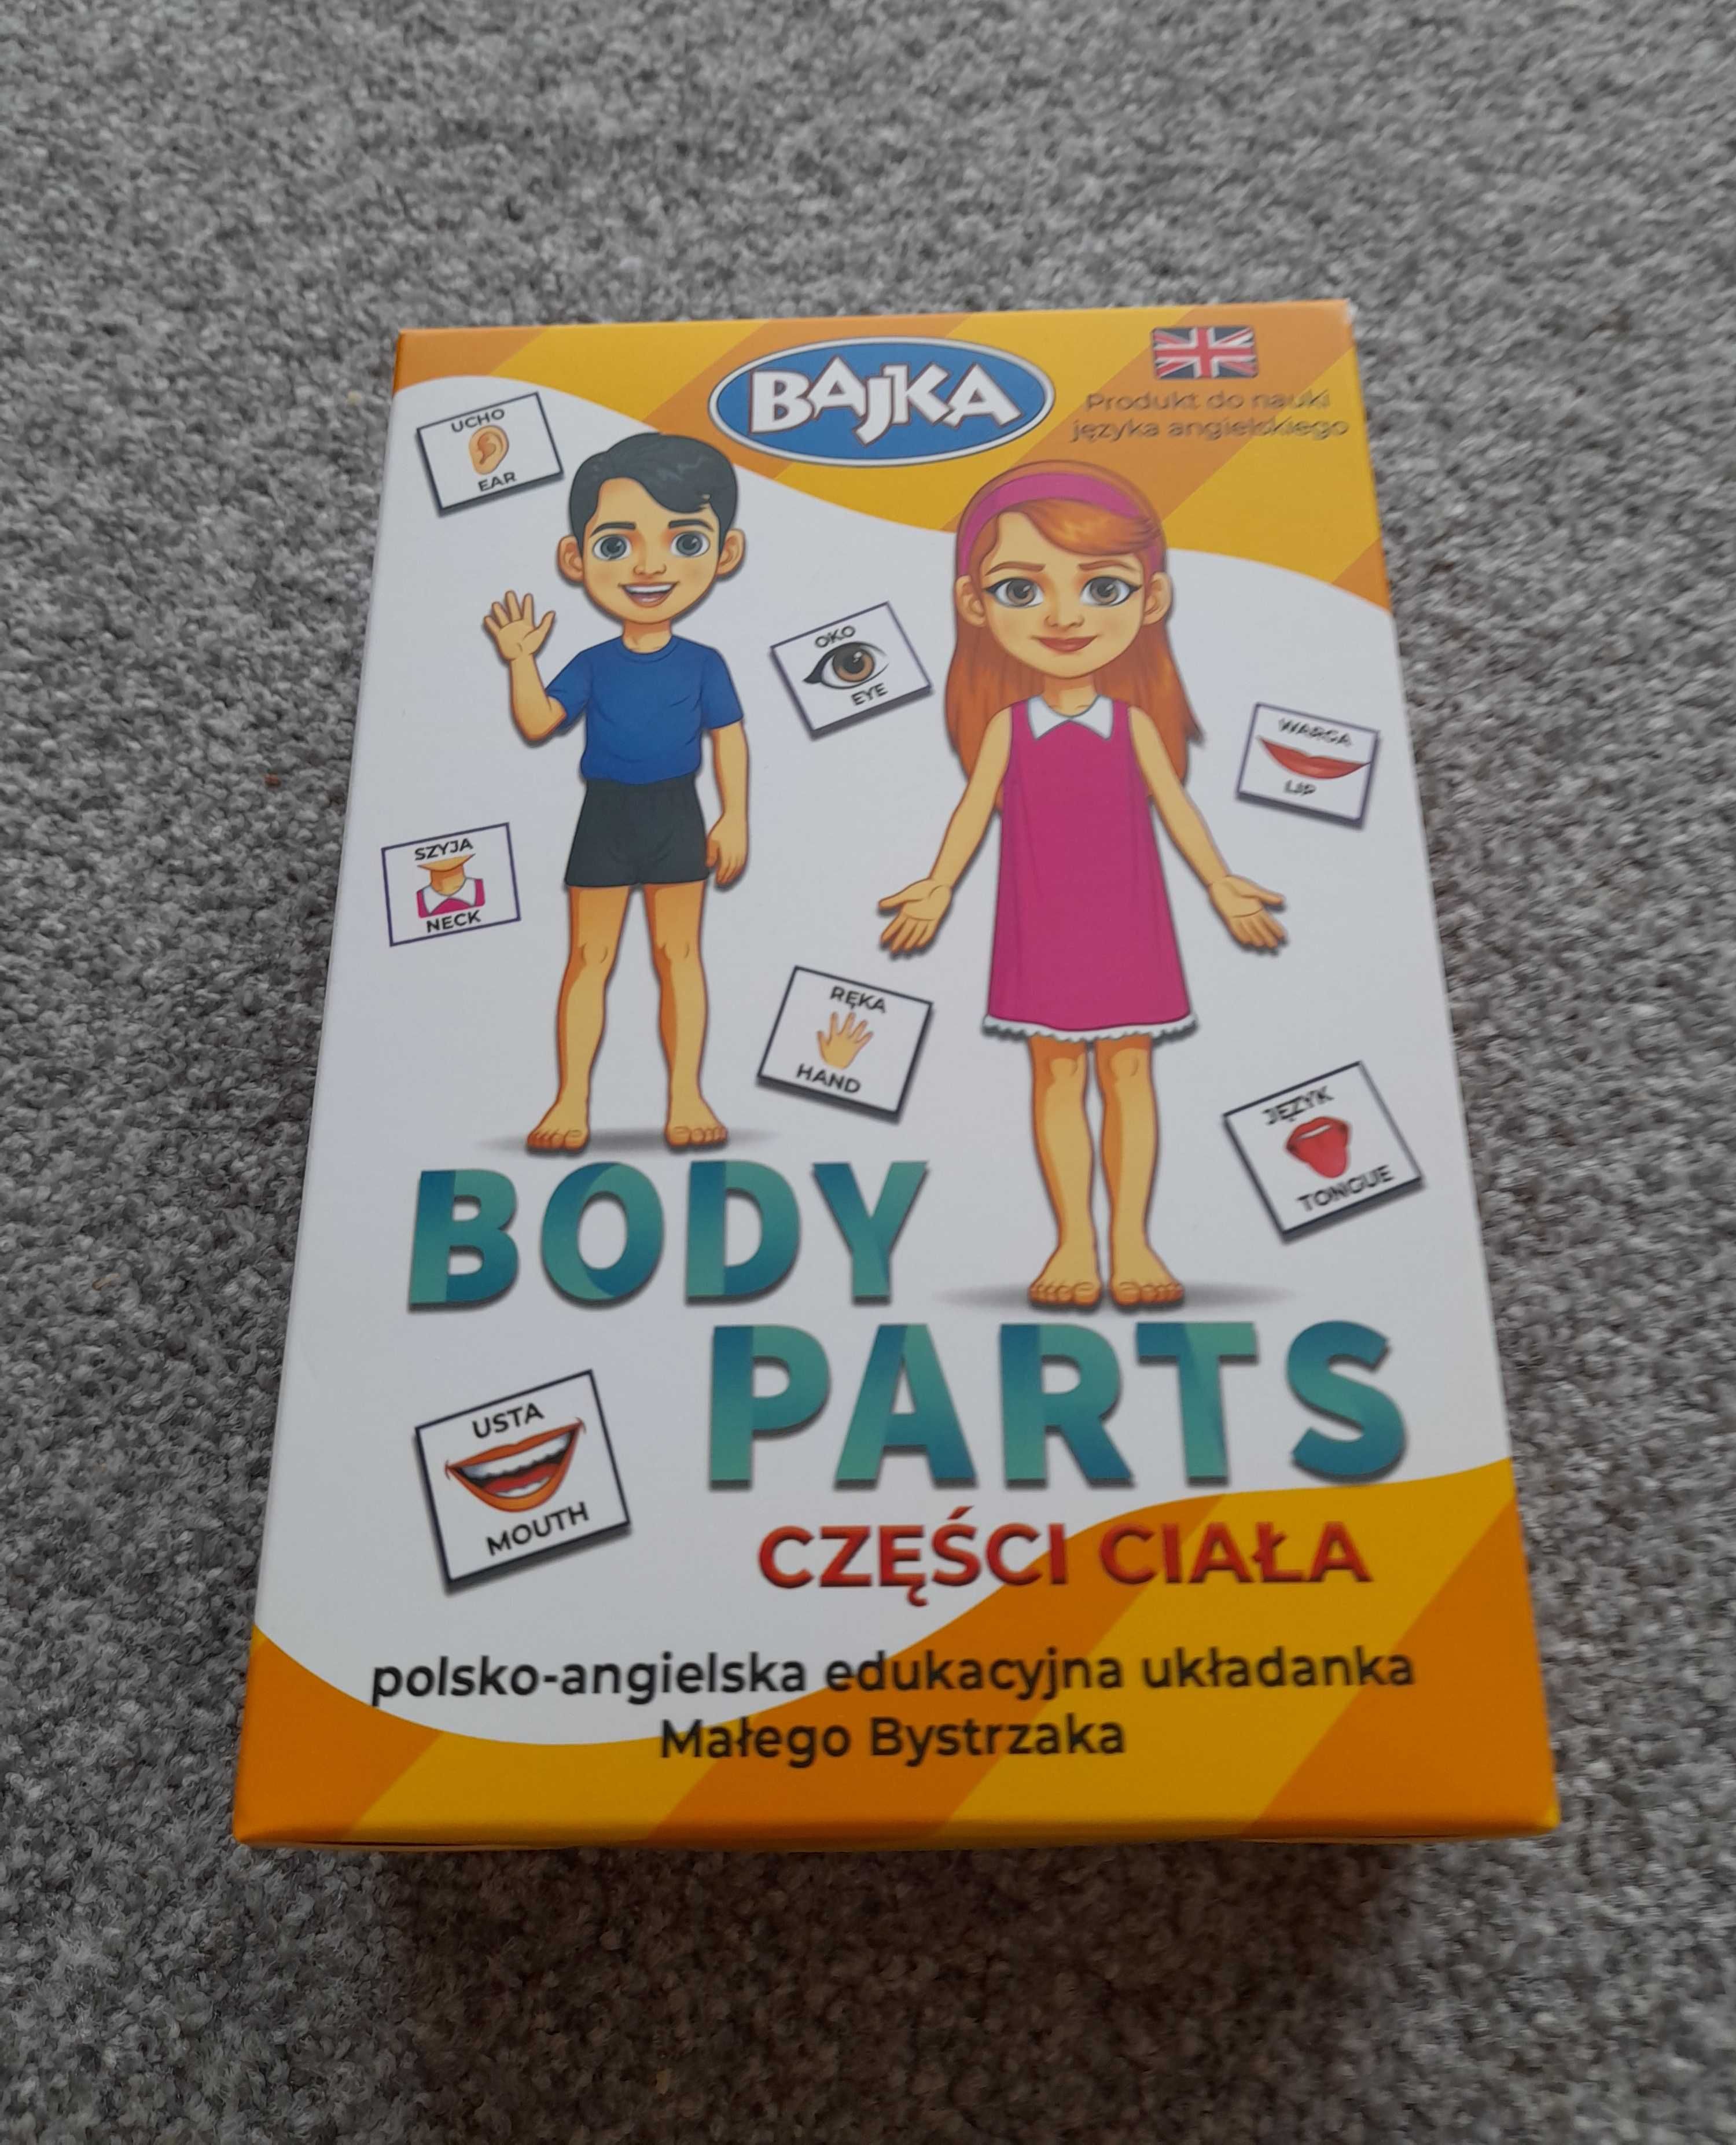 Układanka Małego Bystrzaka "Części ciała, Body Parts" po angielsku